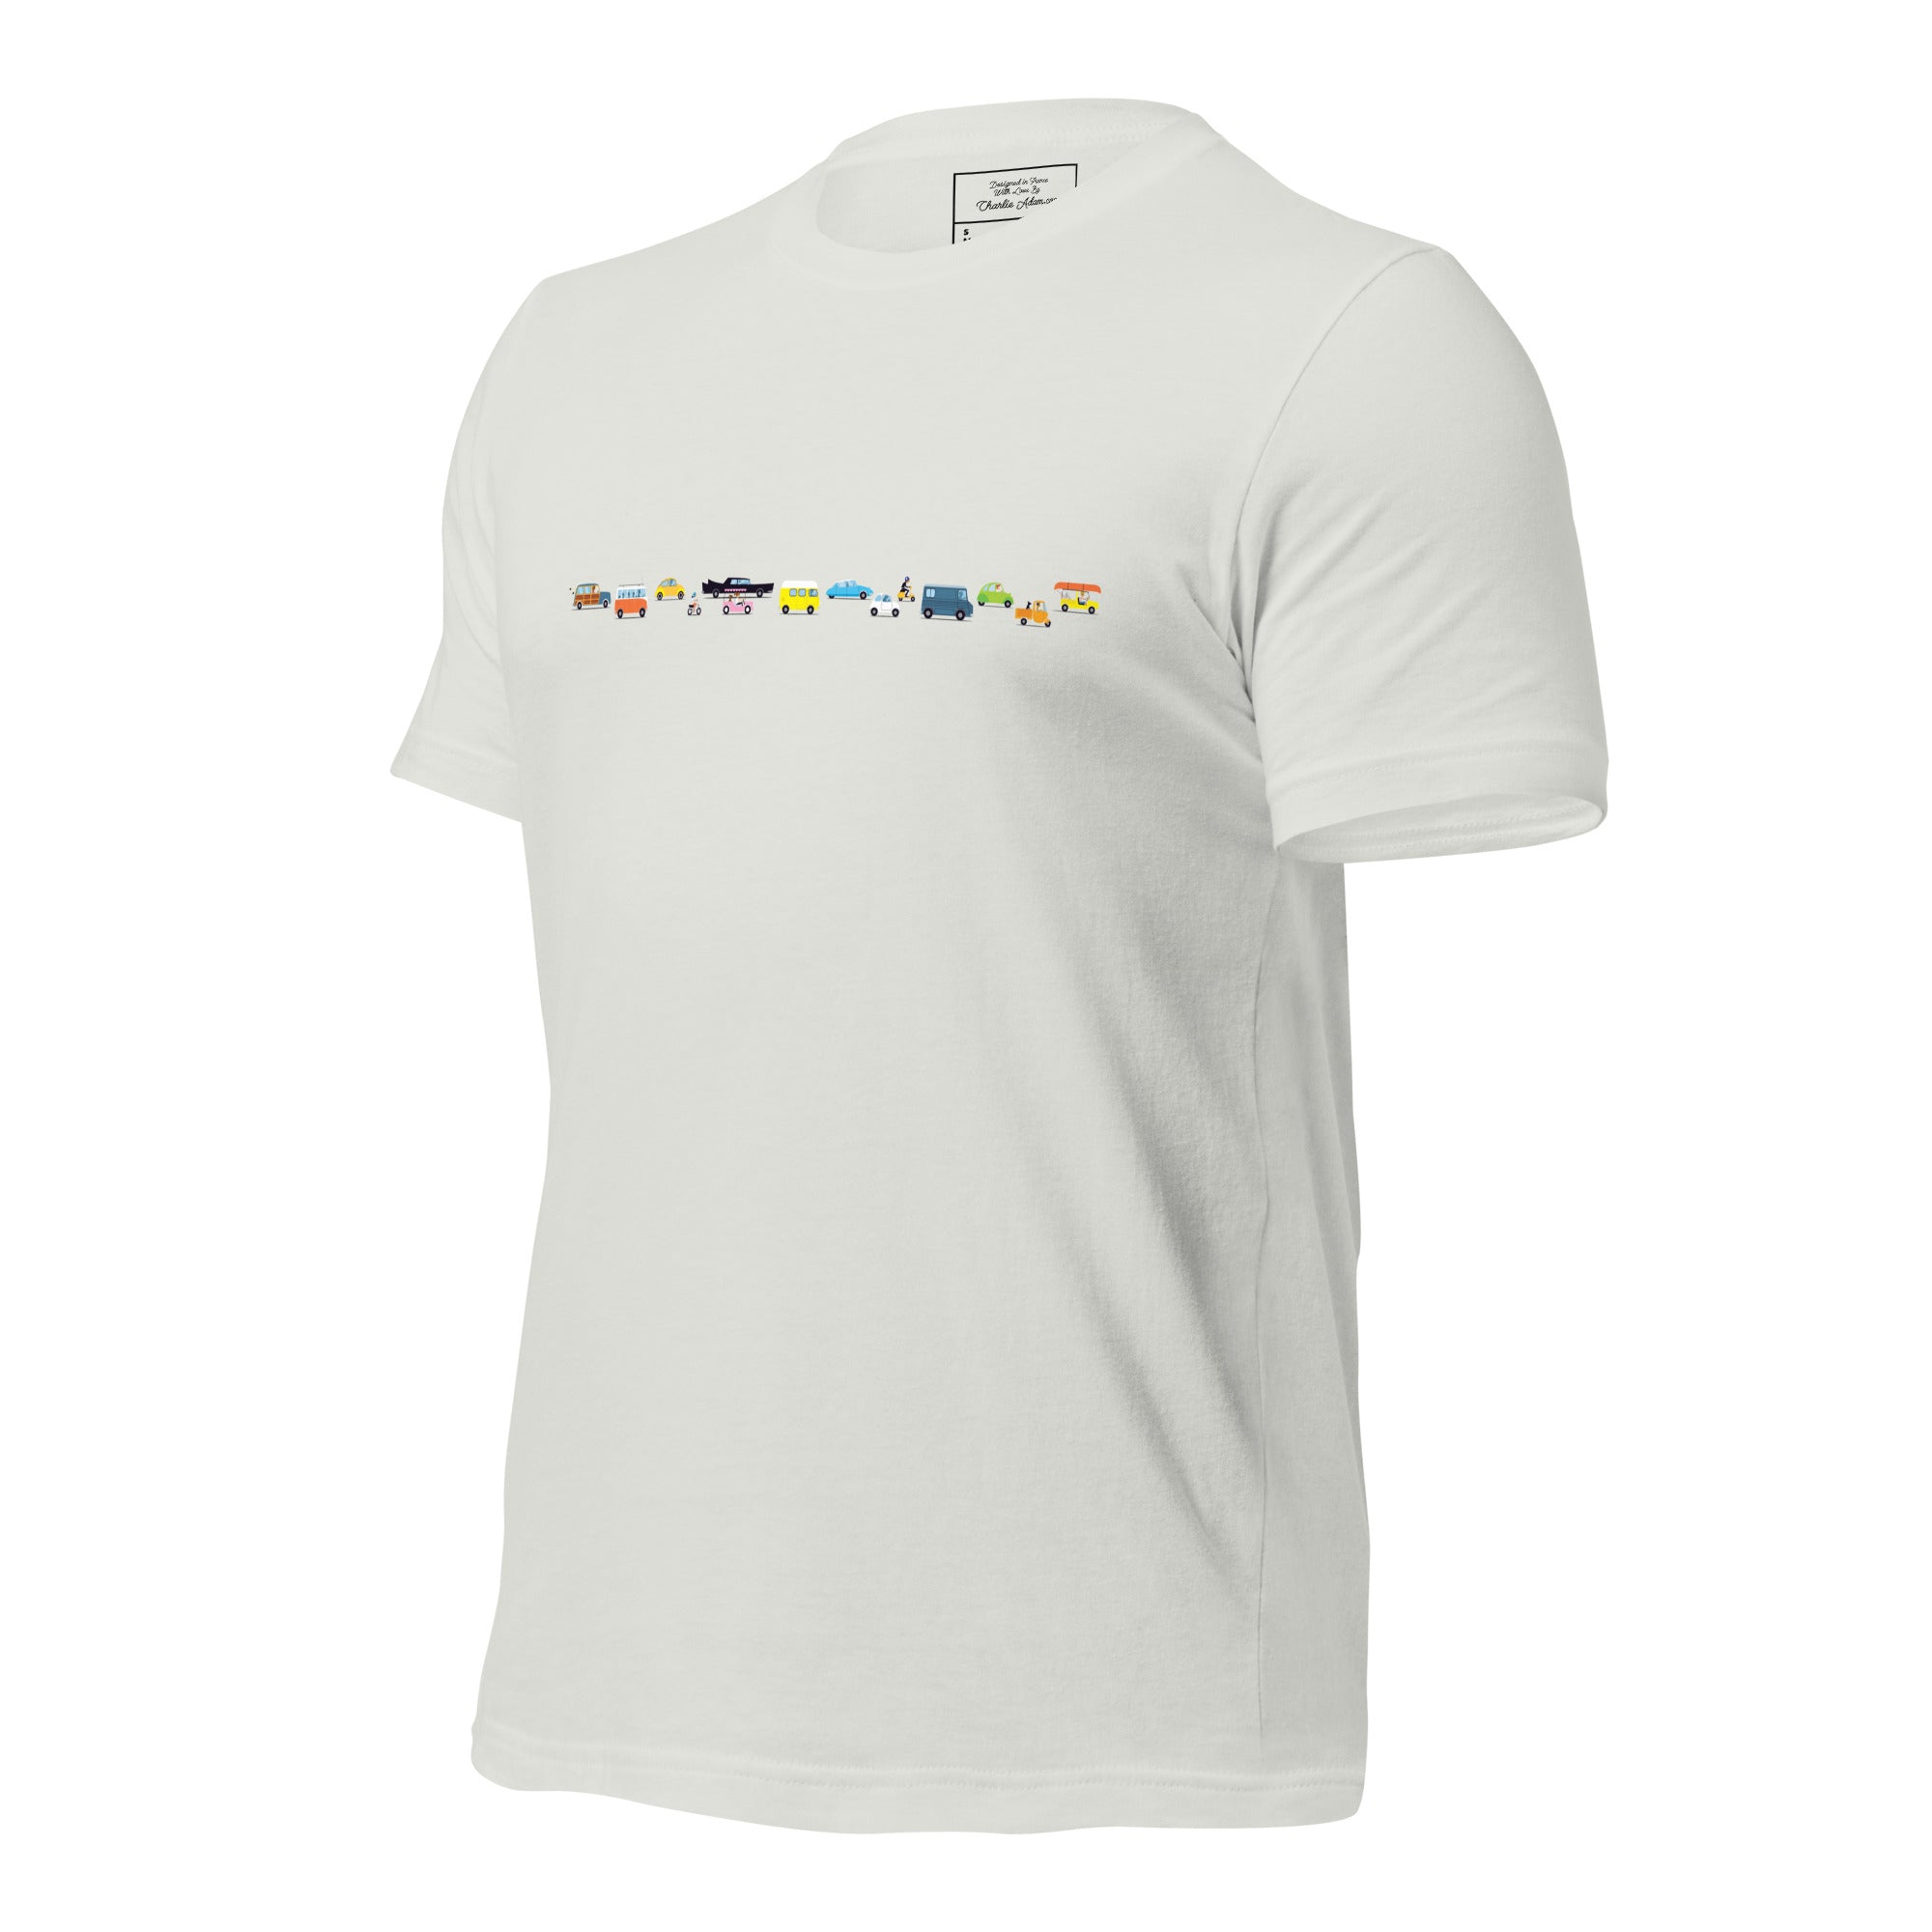 T-shirt en coton unisexe Vintage Cars Traffic Jam sur couleurs claires